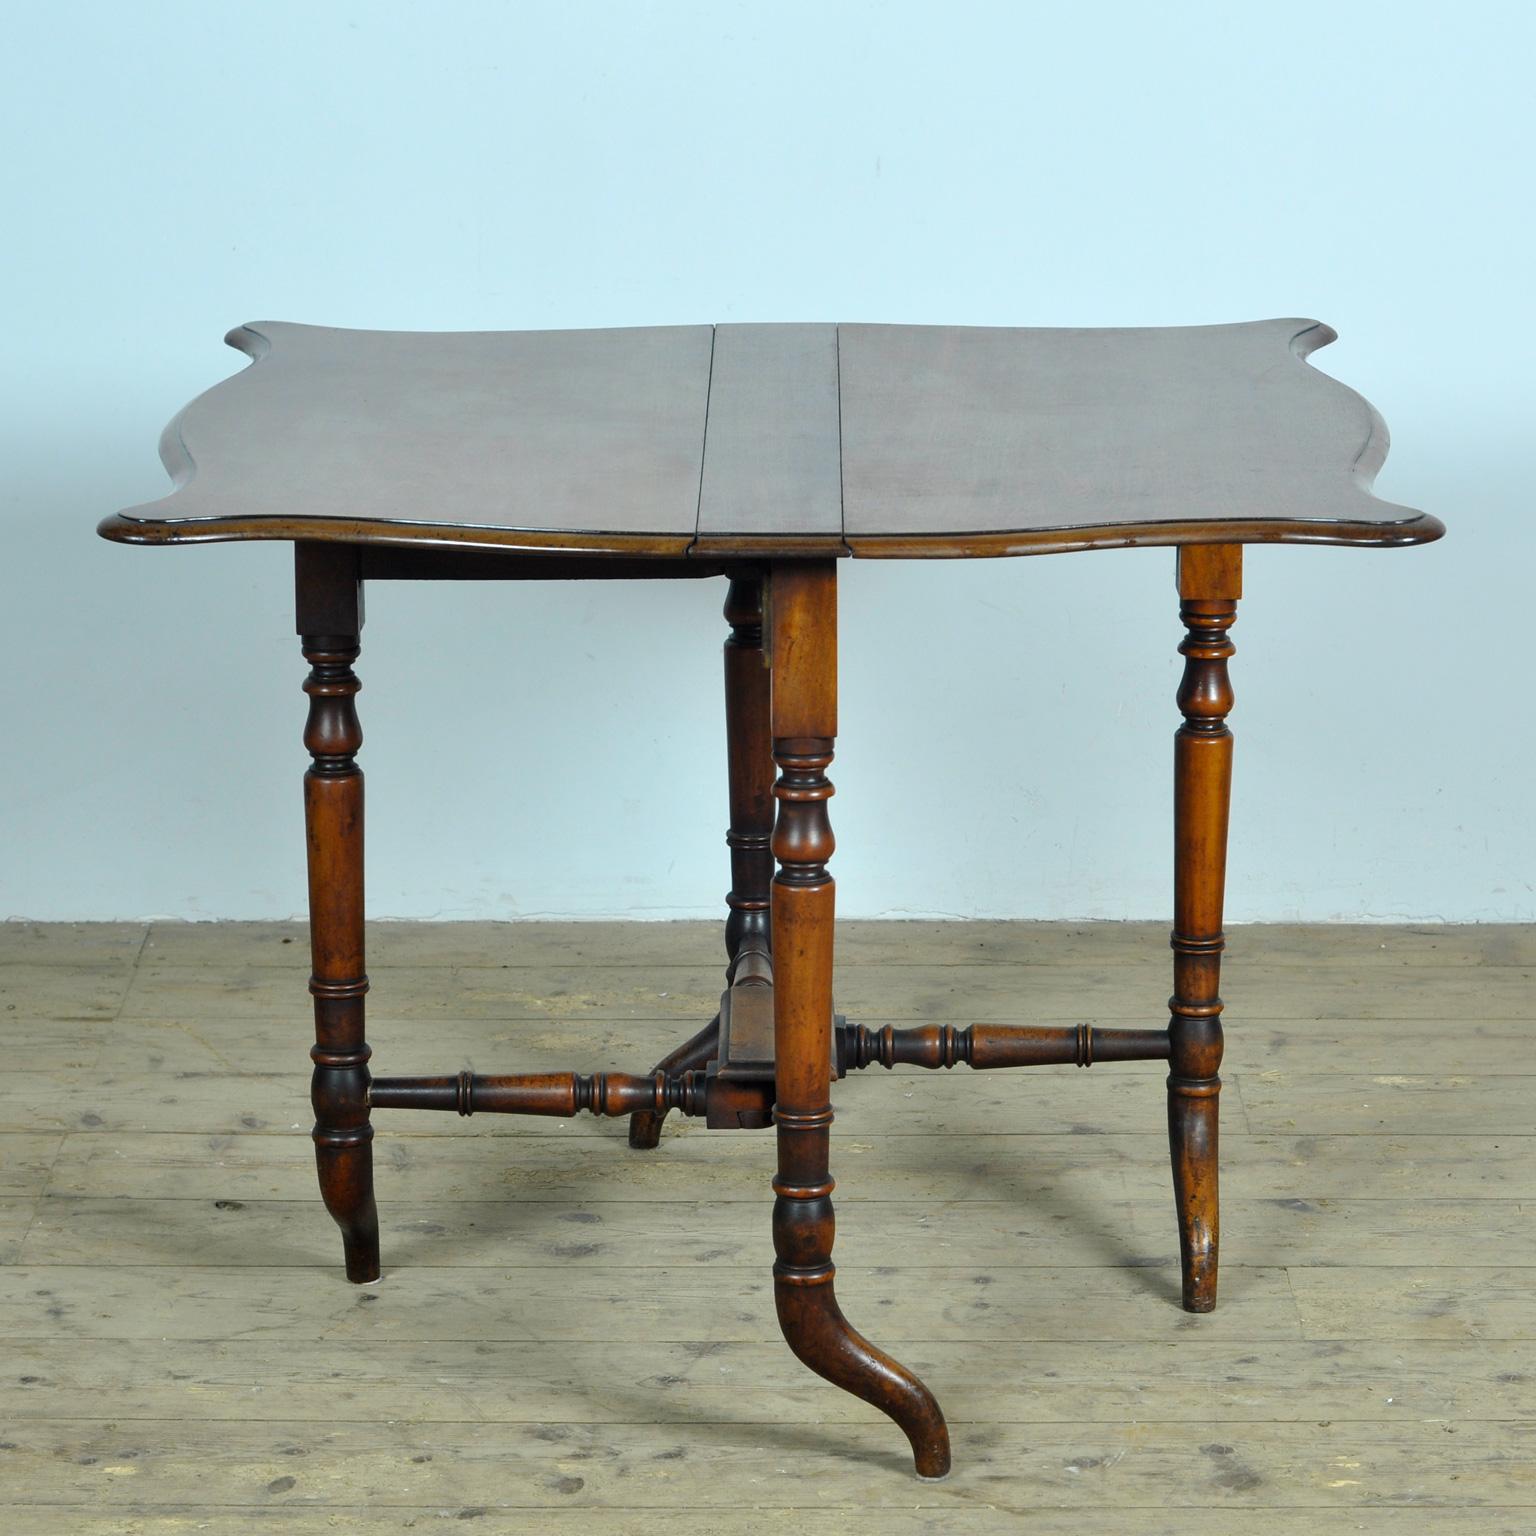 Une table à feuilles tombantes du 19e siècle anglais, avec un plateau pliant et de magnifiques pieds tournés. Cette table pliante anglaise, datant de la première moitié du XIXe siècle, présente un plateau carré aux élégants coins arrondis, composé